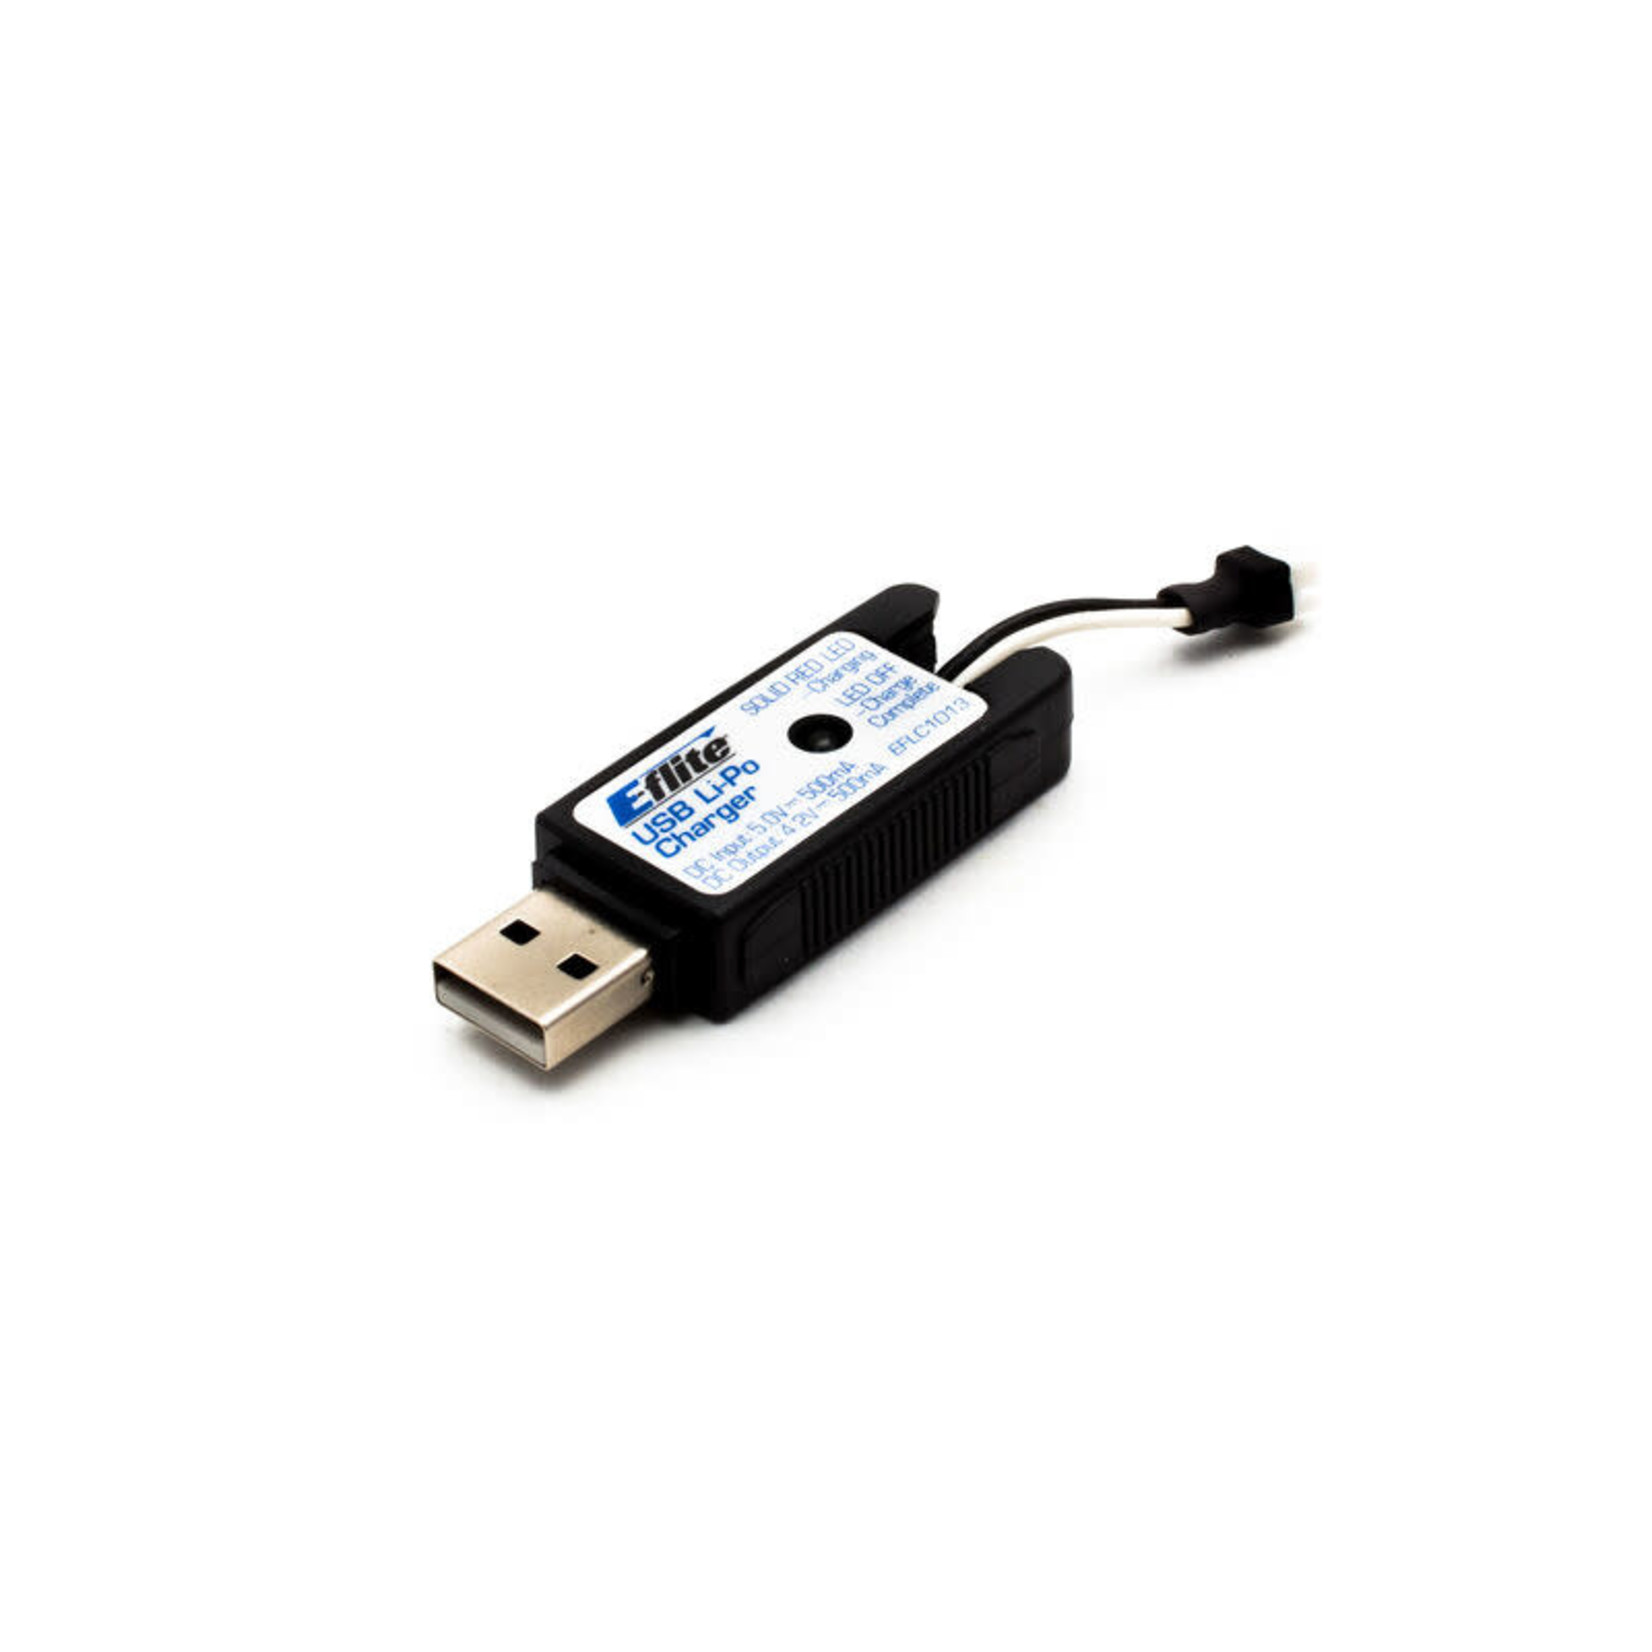 E-Flite EFLC1013 E-flite 1S USB Li-Po Charger 500mAh High Current UMX